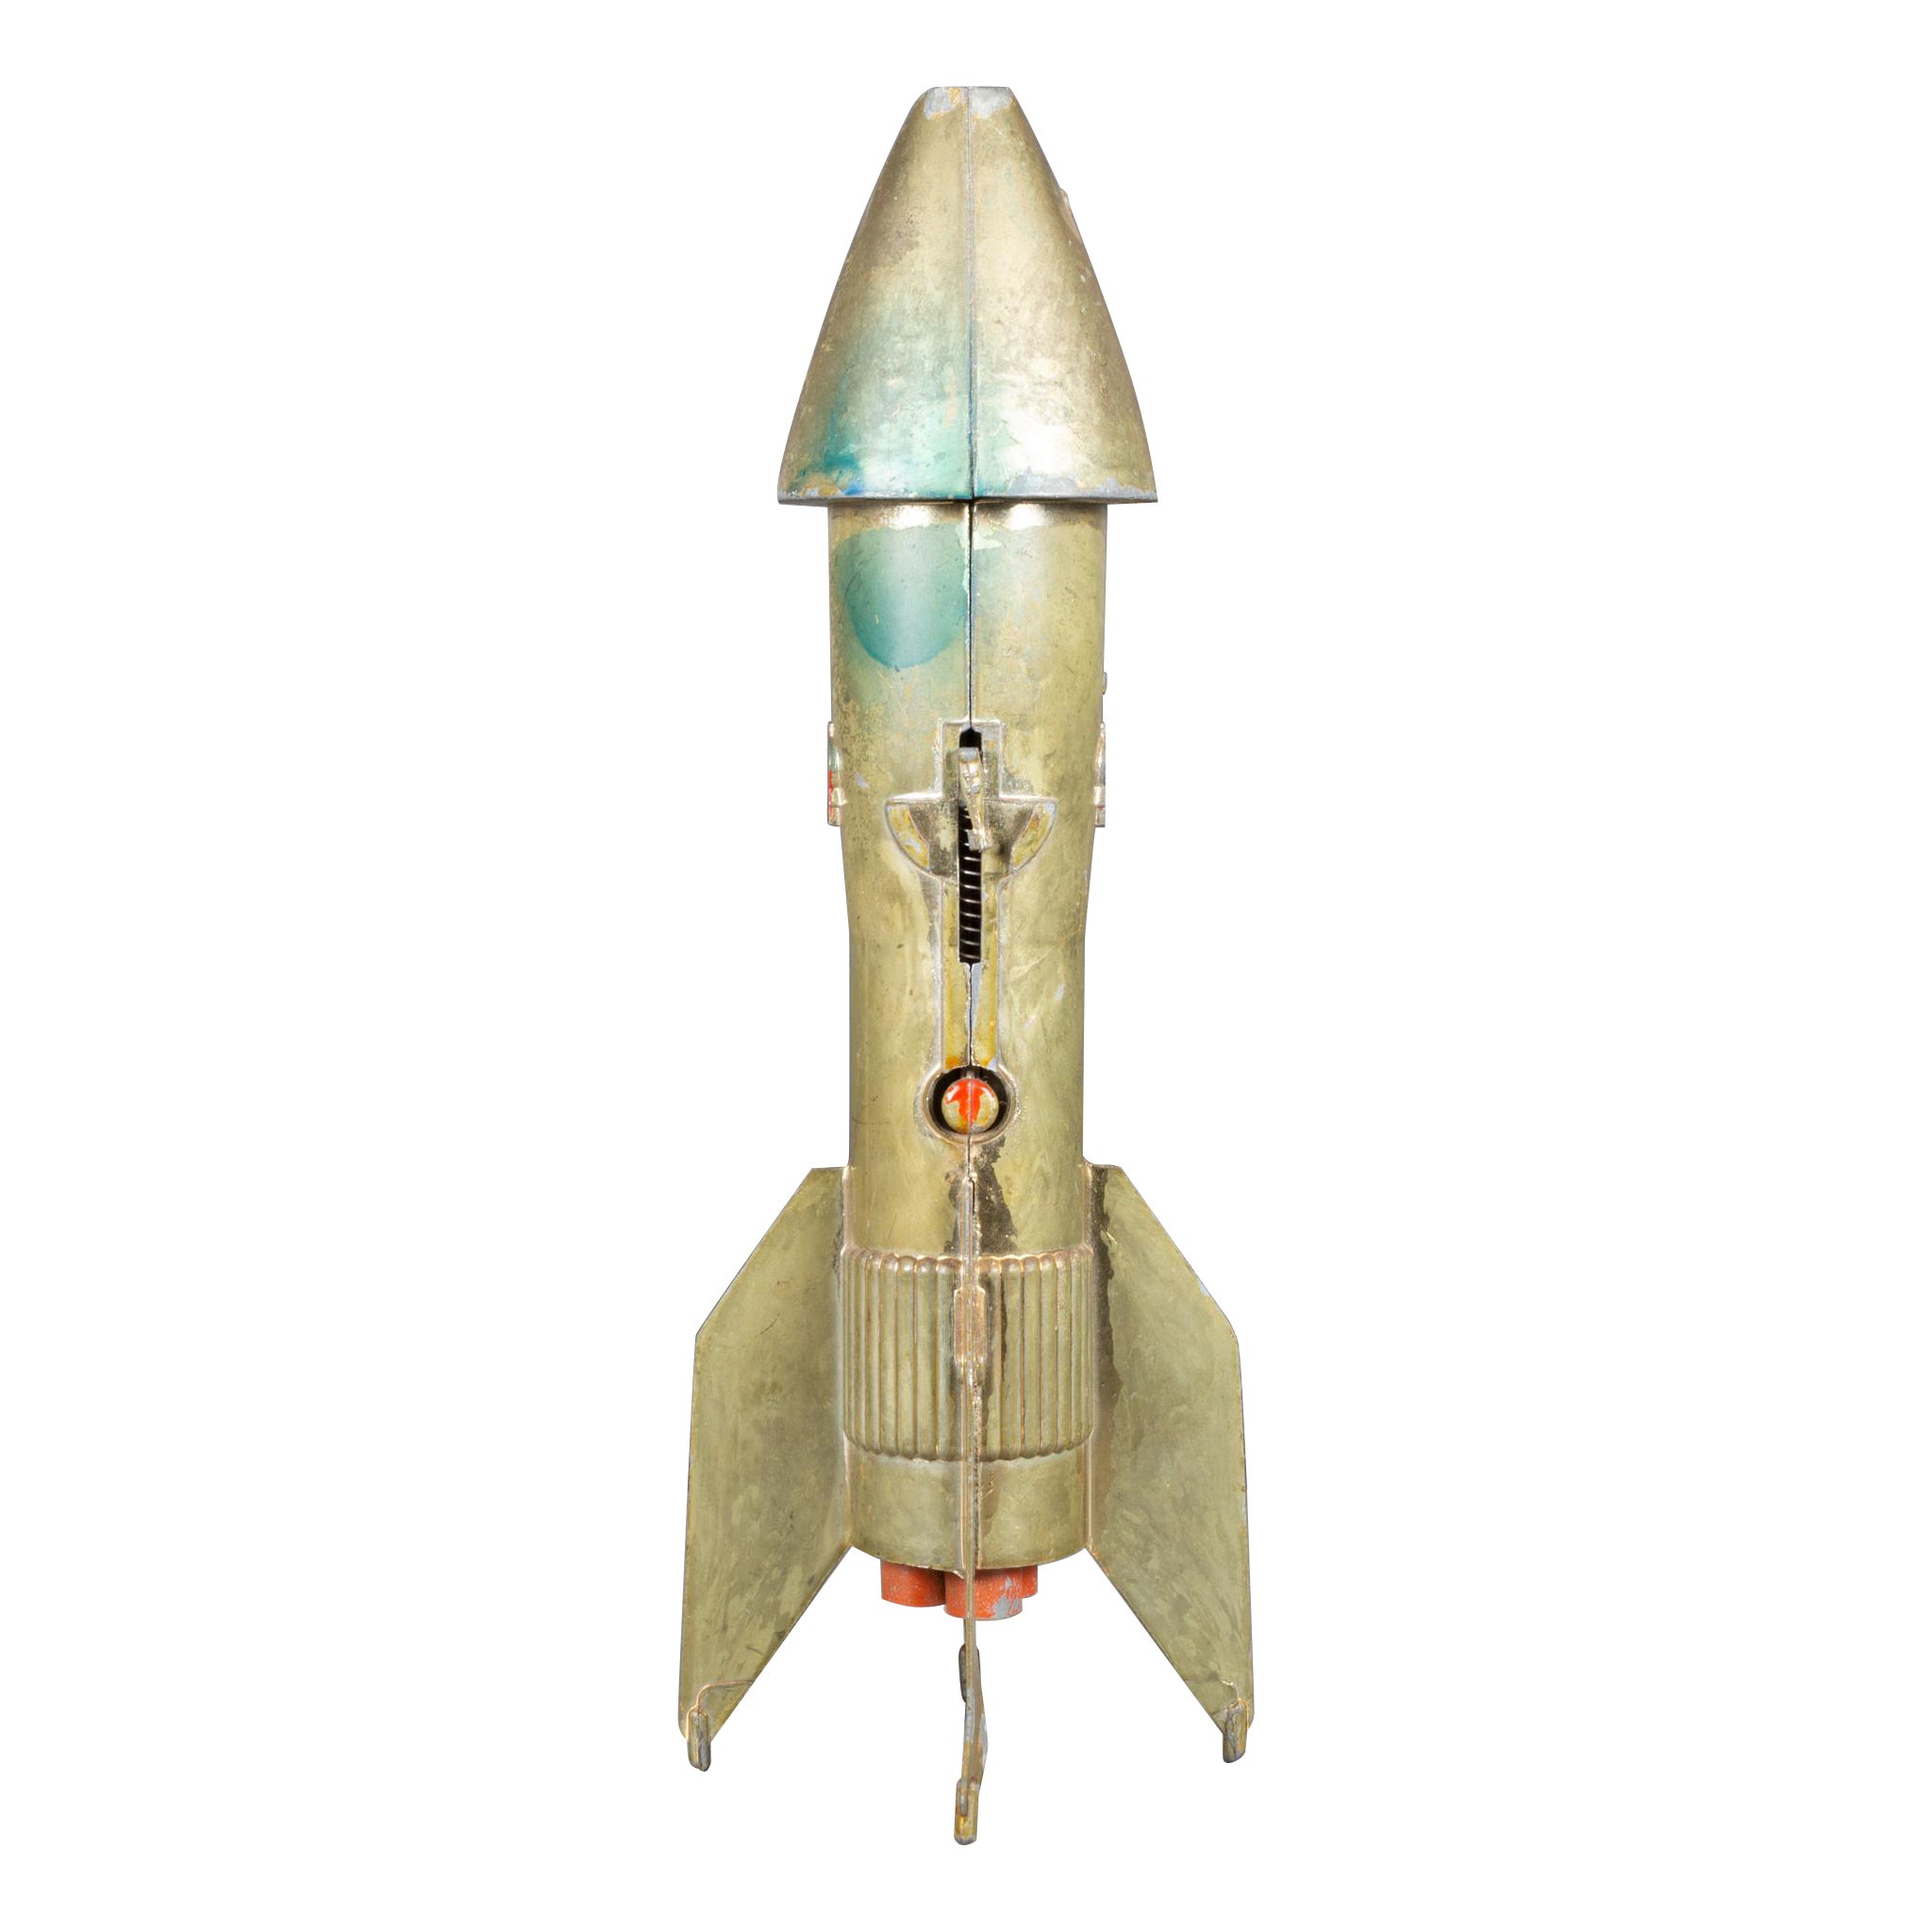 Vintage Astro Rocket Ship Savings Bank c.1957  (FREE SHIPPING)